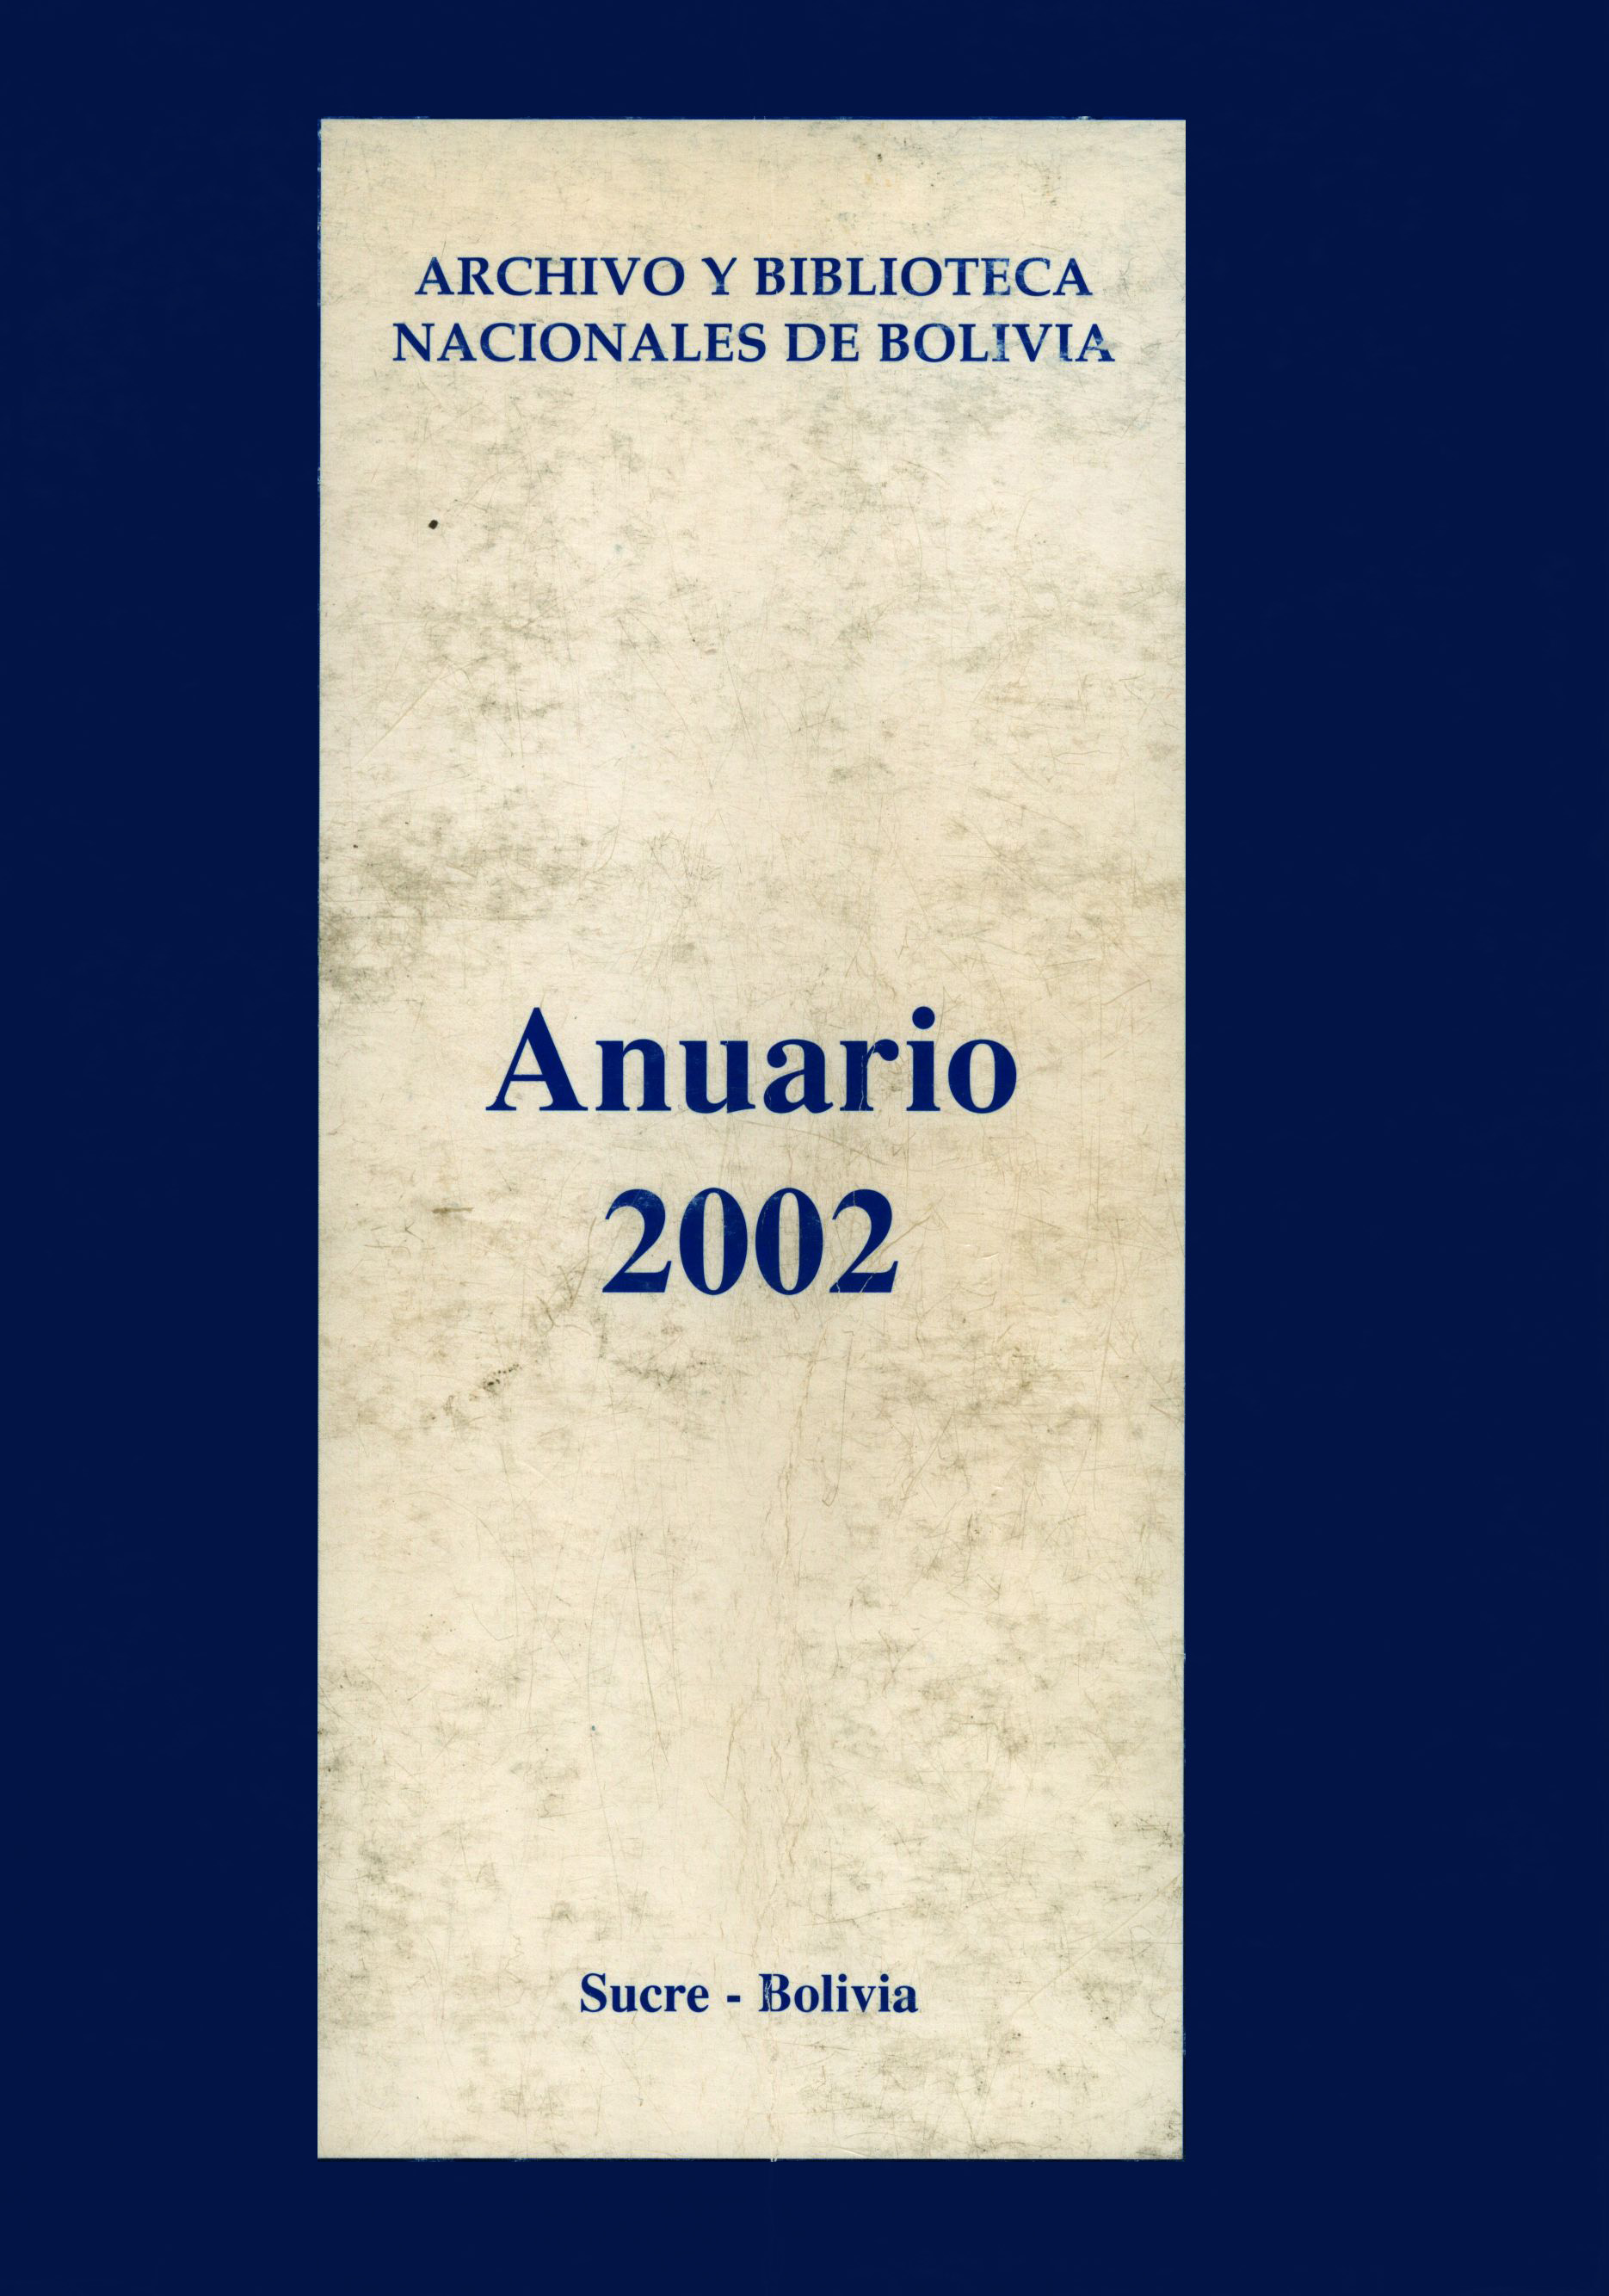 Anuarios0024